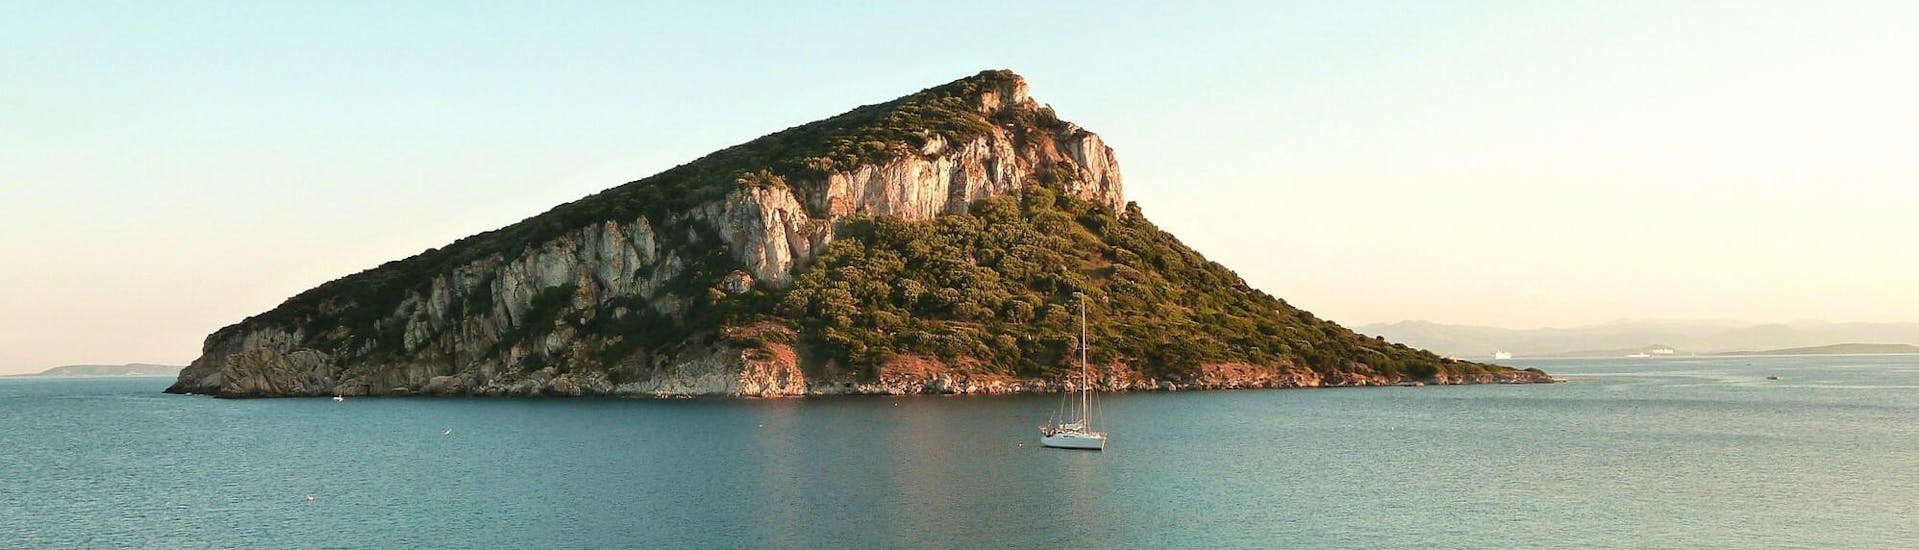 Varios barcos cerca de la costa durante un paseo en barco a la isla de Figarolo.